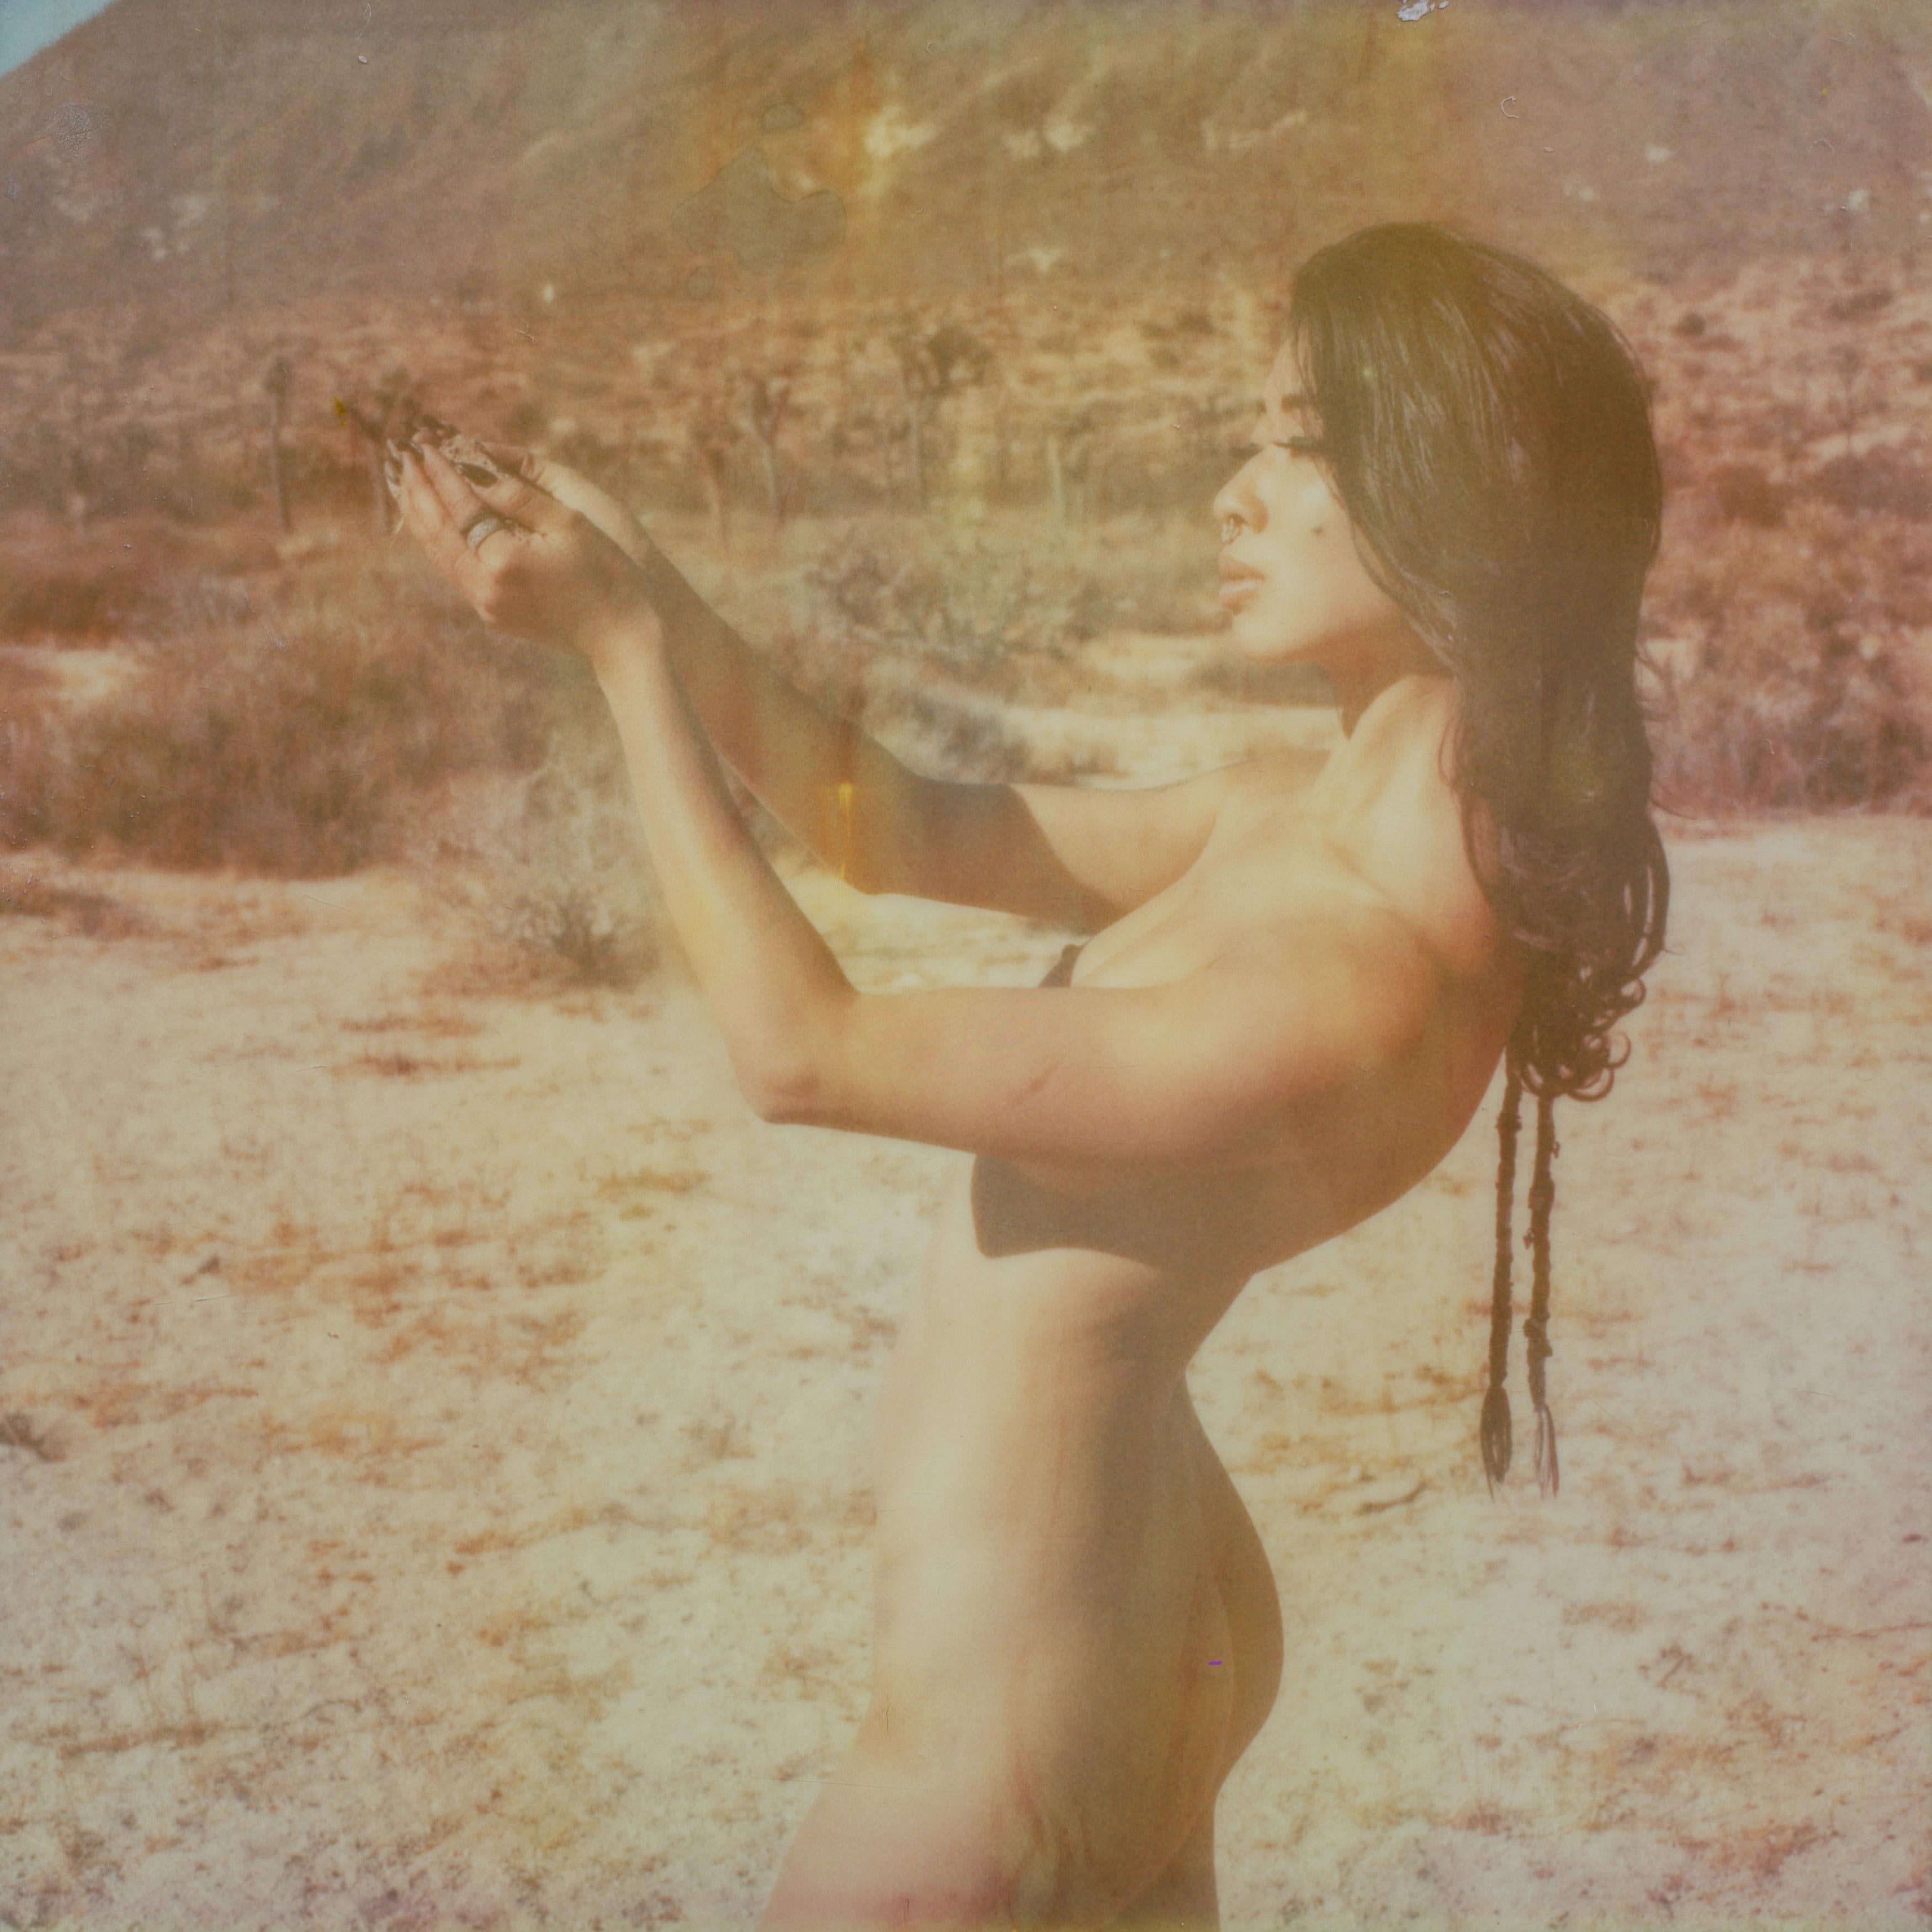 Kirsten Thys van den Audenaerde Nude Photograph - Under the Sun - Contemporary, Polaroid, Nude, 21st Century, Joshua Tree